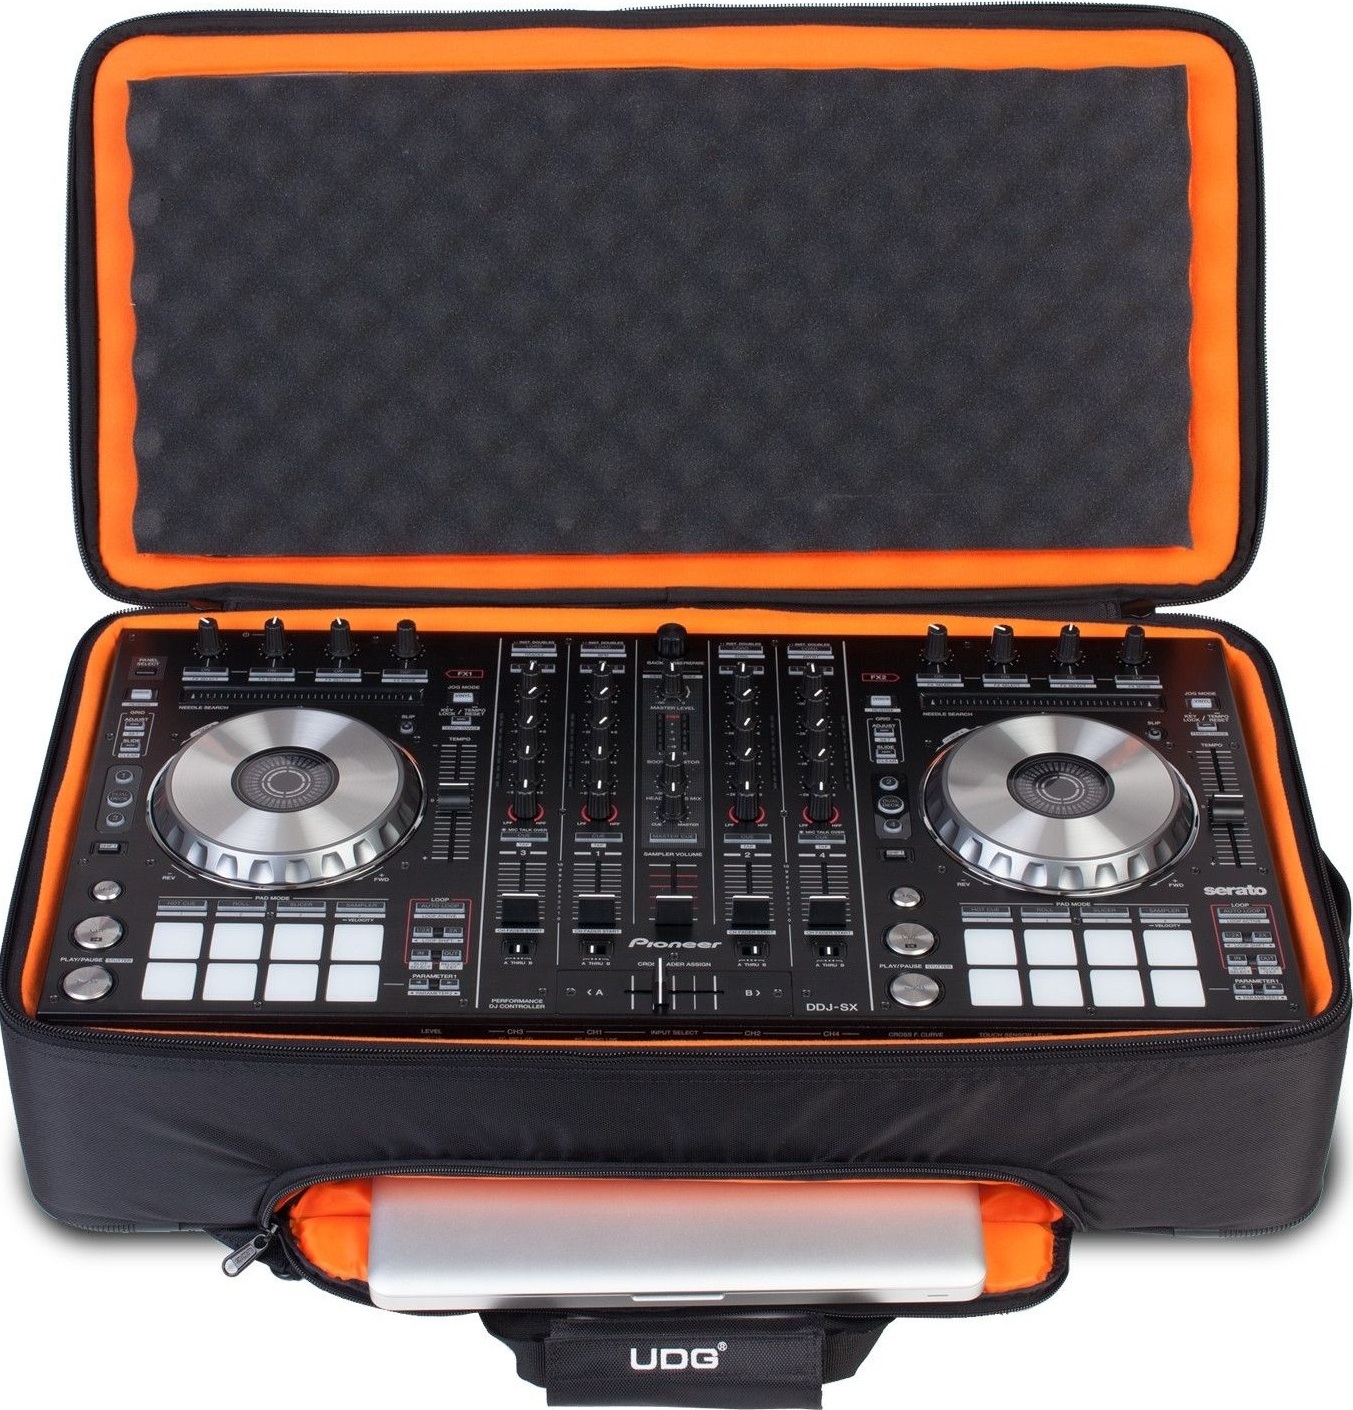 Udg Ultimate Midi Controller Backpack Large Black/orange Inside Mk2 - Trolley DJ - Main picture